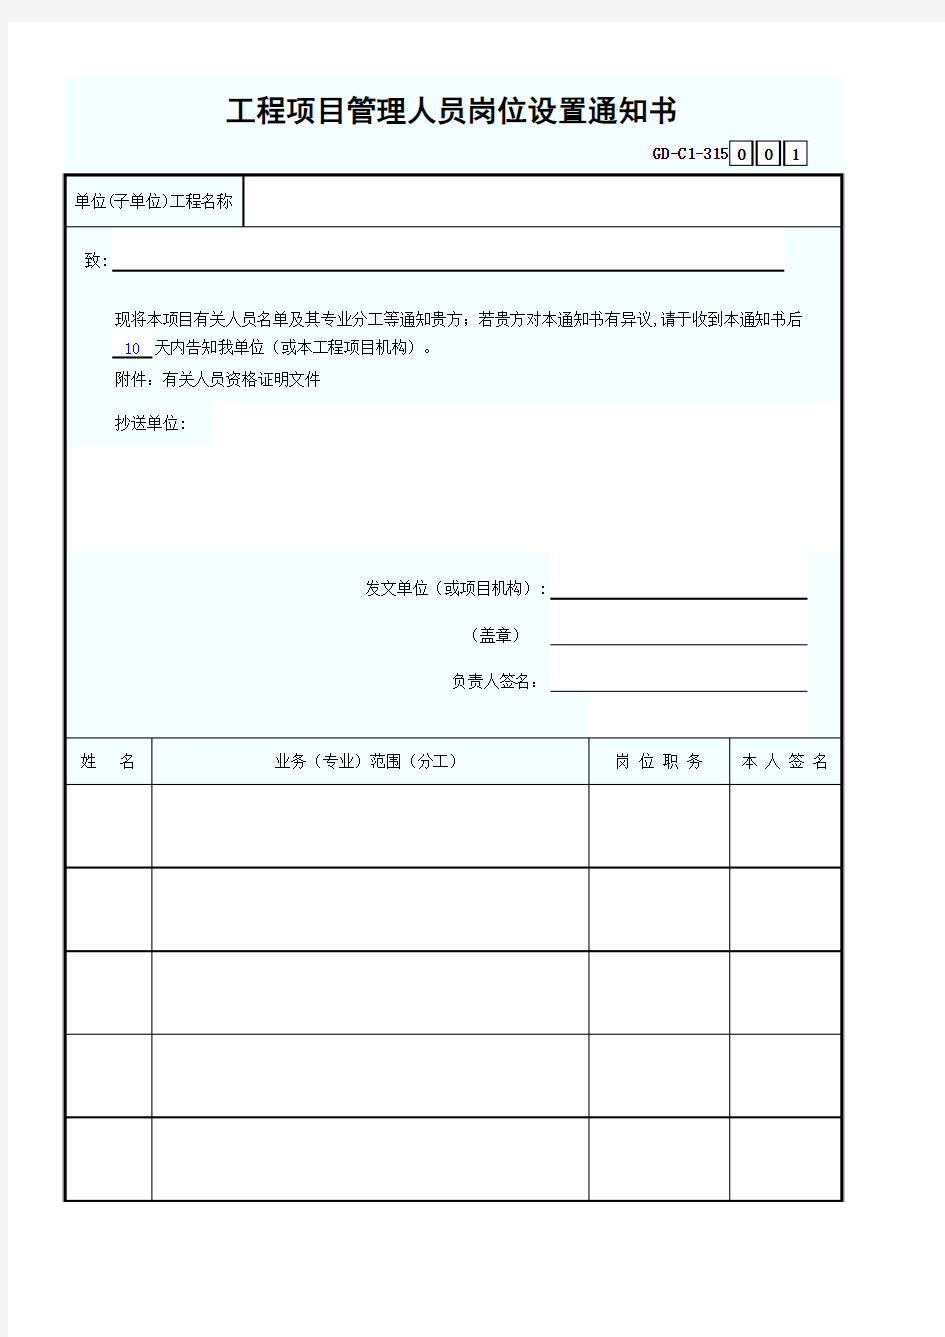 工程项目管理人员岗位设置通知书-001